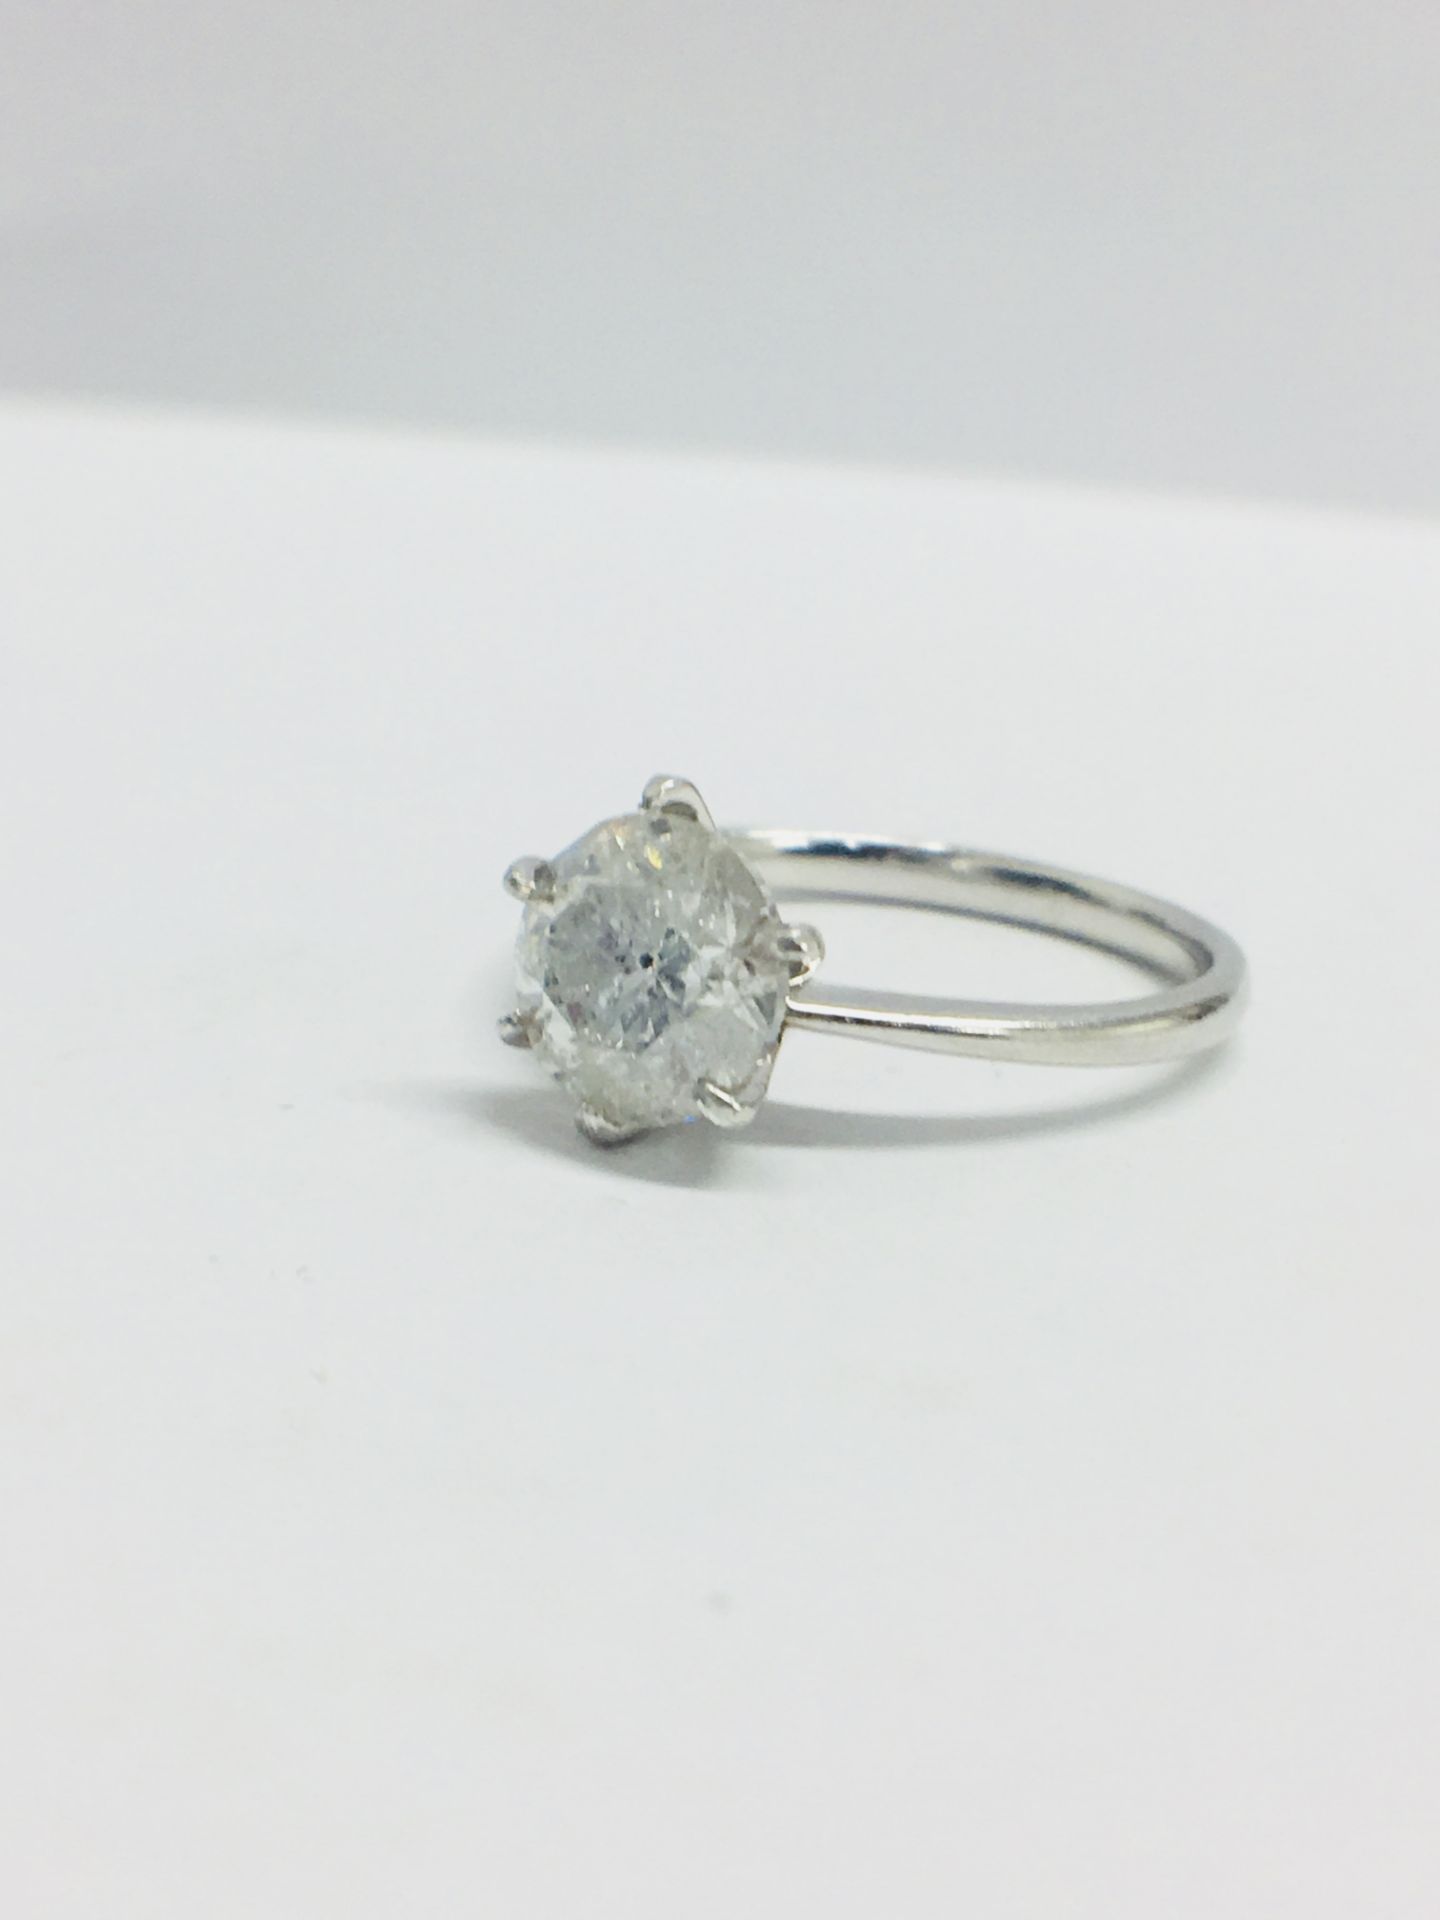 1.73Ct Diamond Solitaire Ring Set In Platinum. - Image 3 of 6